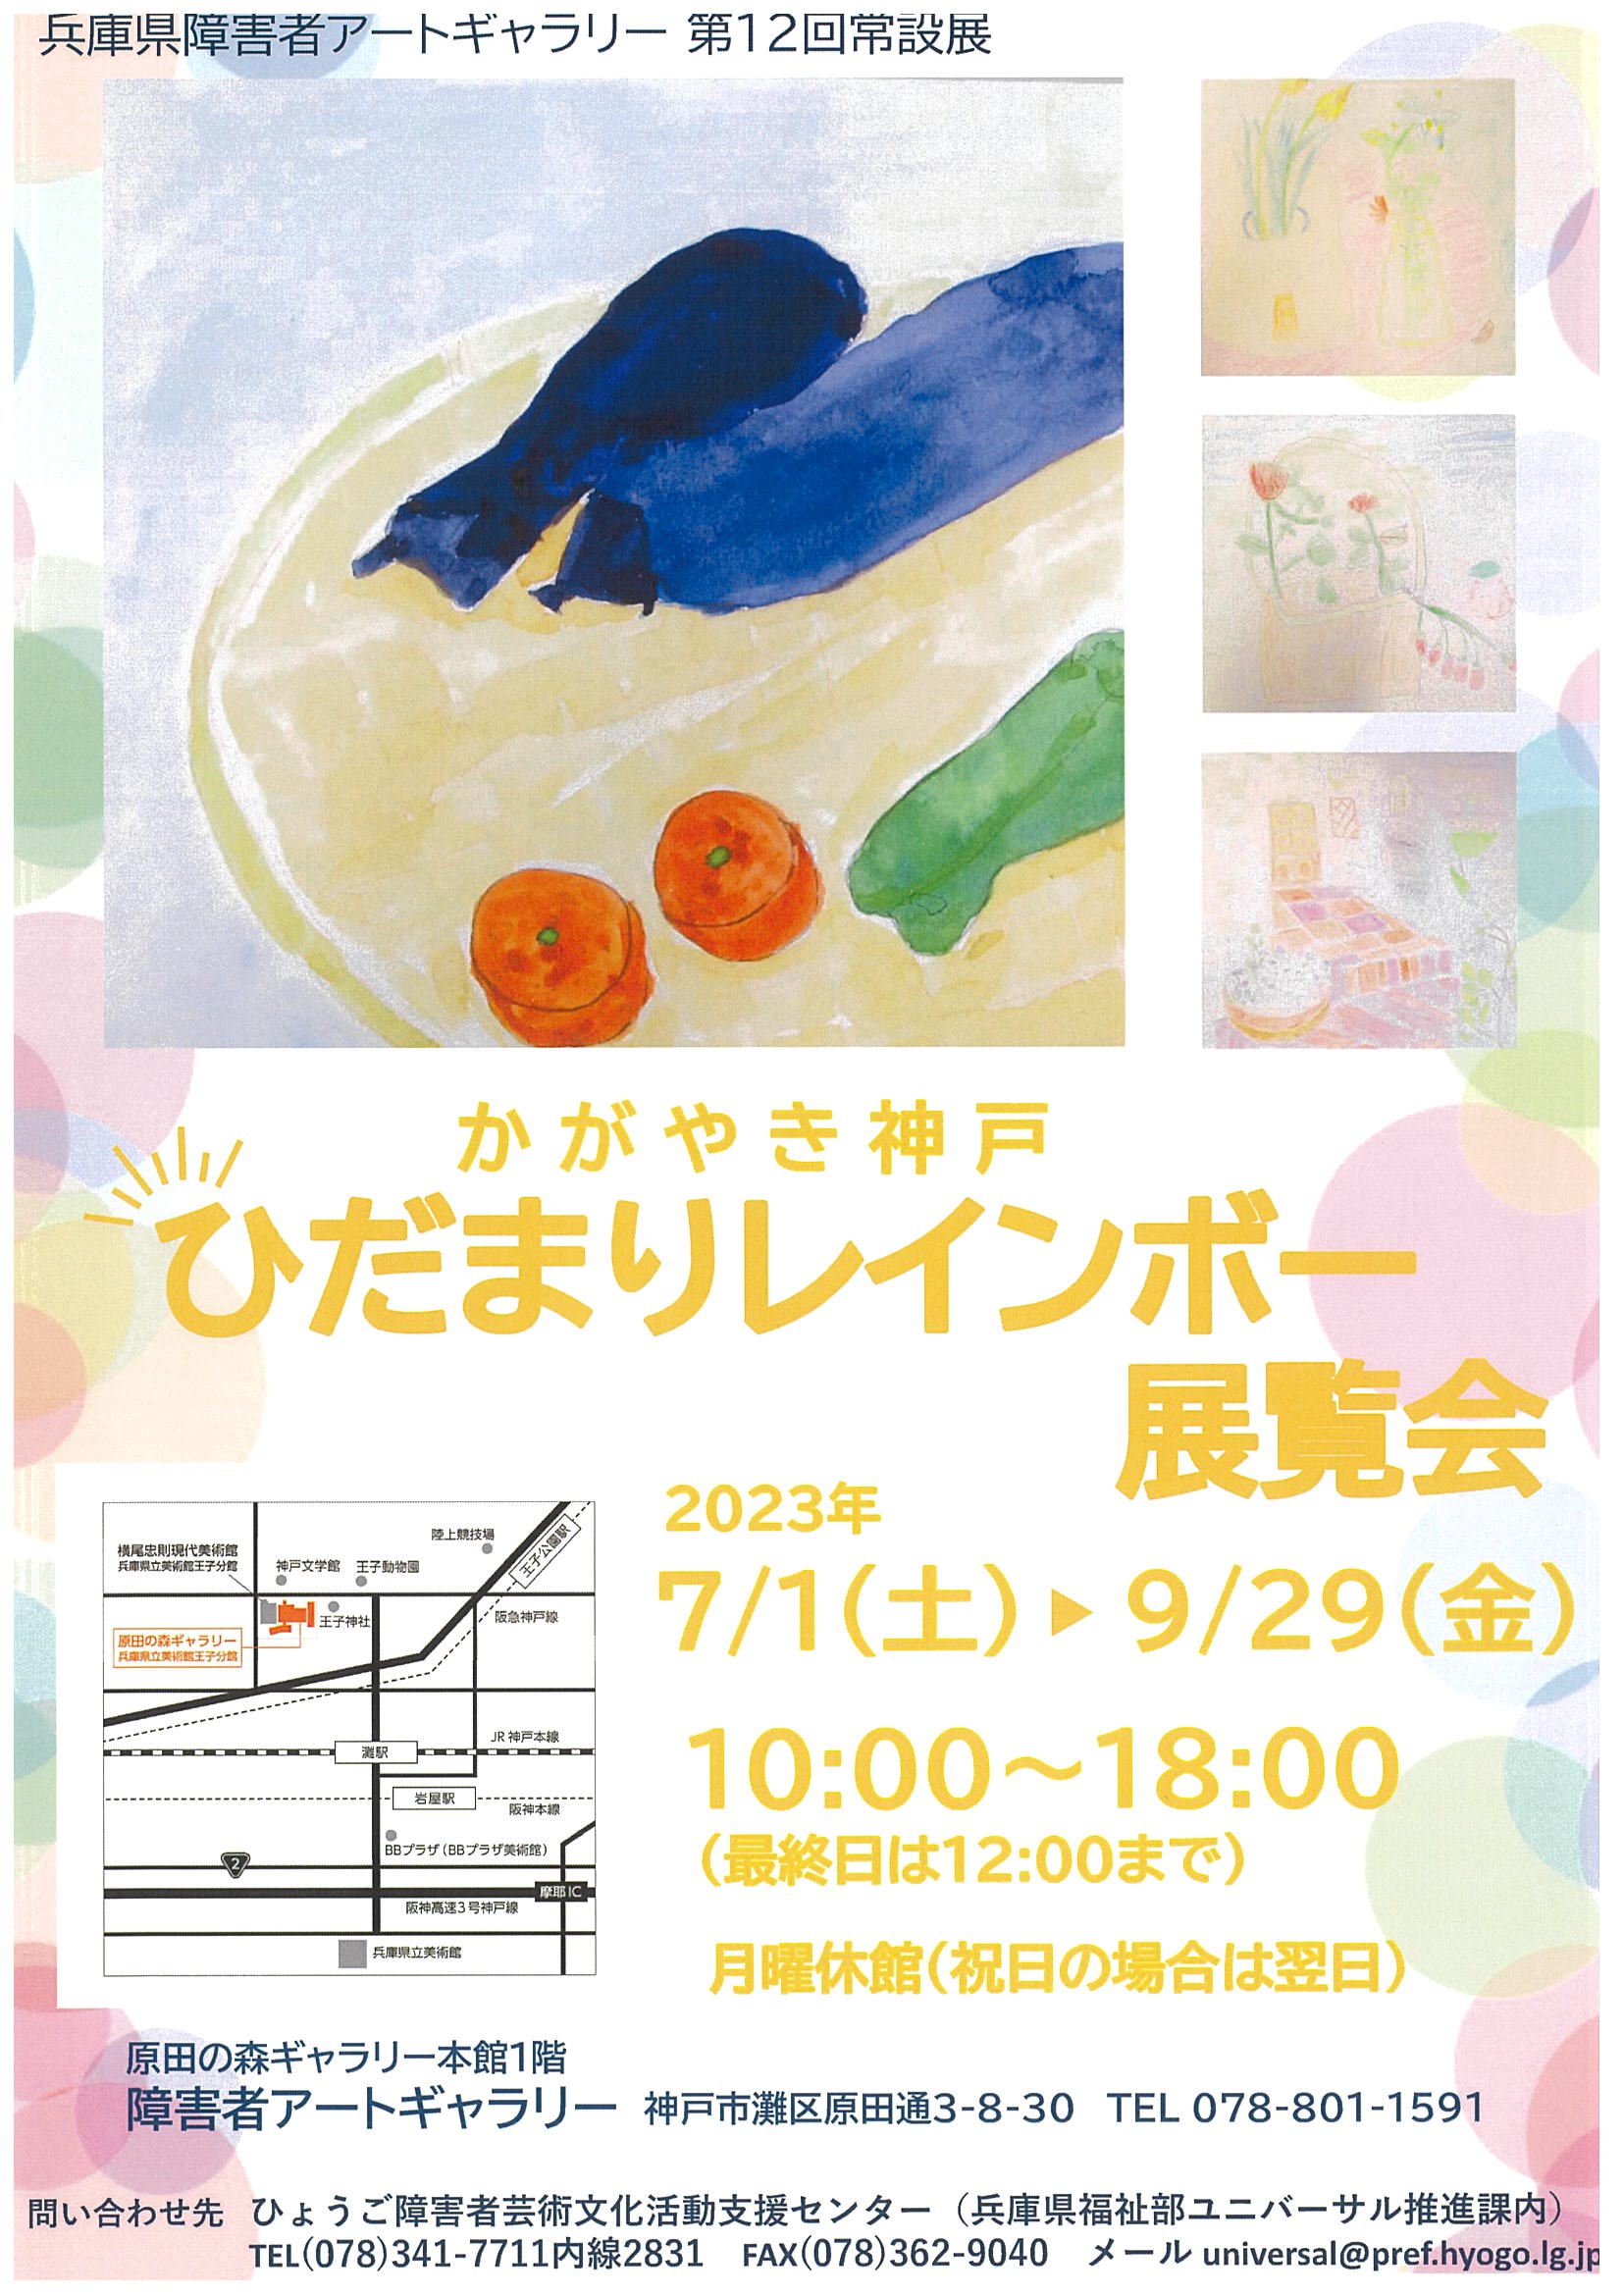 兵庫県障害者アートギャラリー　第12回常設展 「かがやき神戸　ひだまりレインボー展覧会」の開催